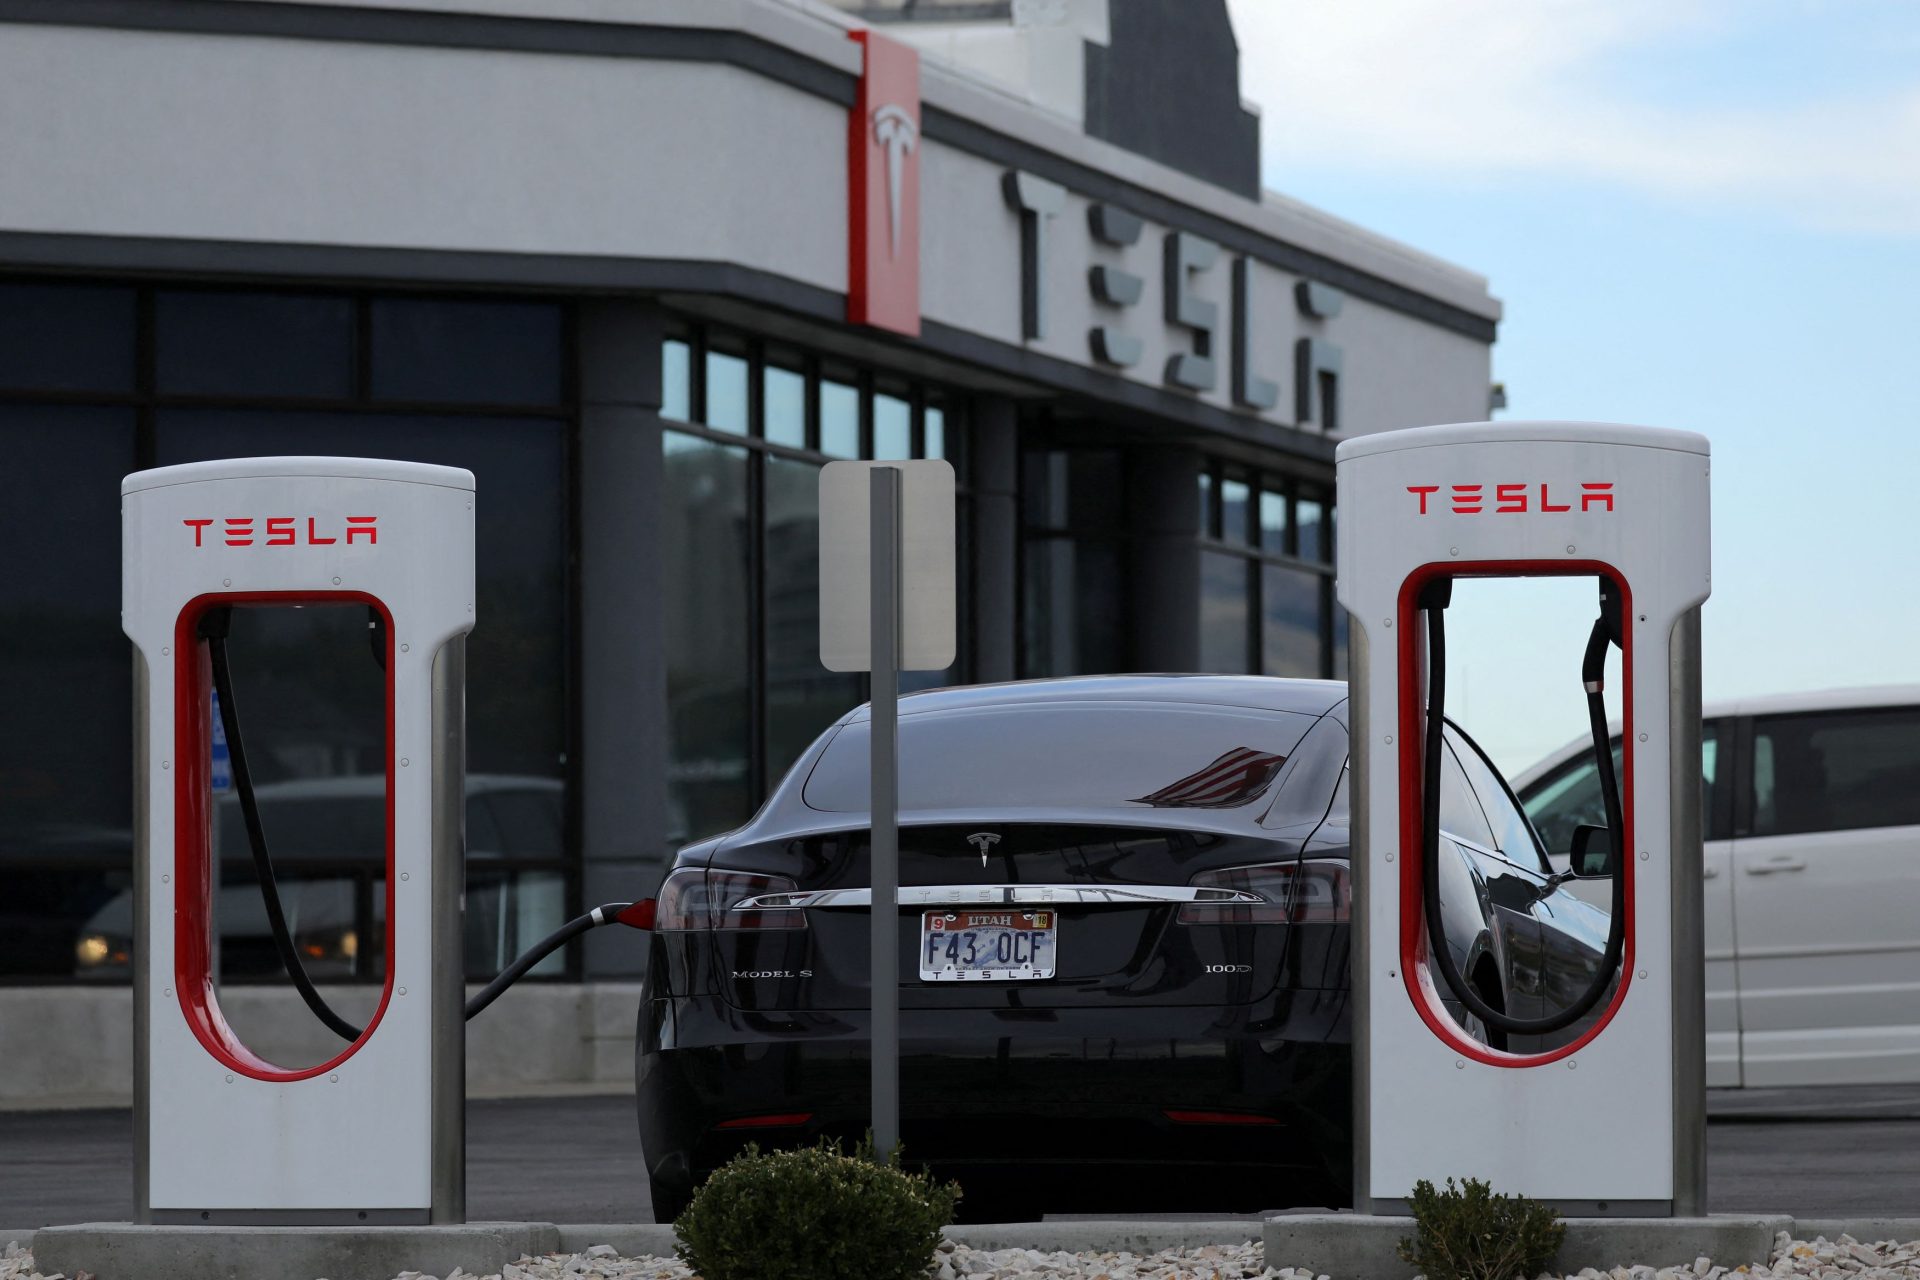 Montée de la compétition sur le marché des voitures électriques, Tesla réduit les prix en Chine